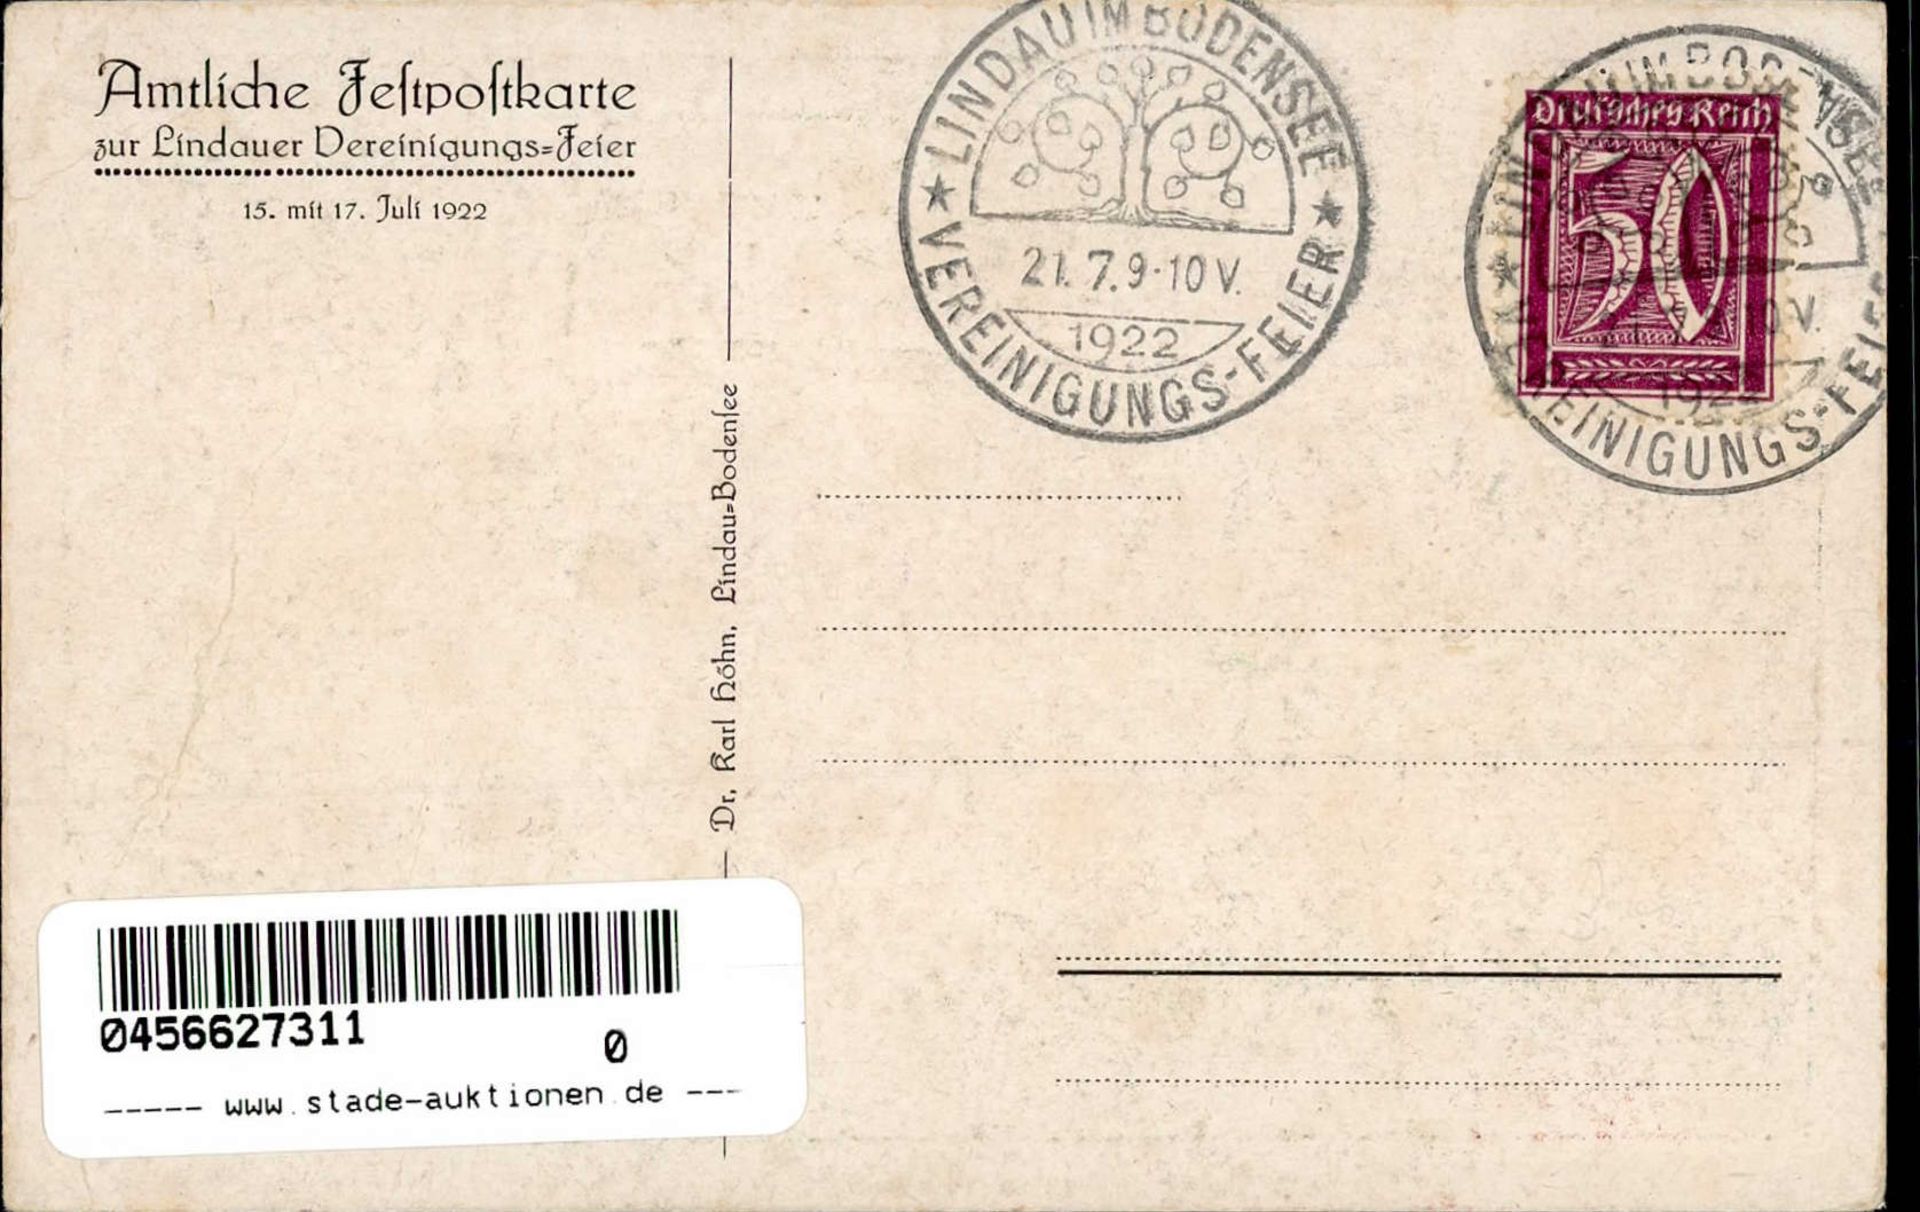 LINDAU,Bodensee - Festpostkarte mit klarem S-o VEREINIGUNGSFEIER 21.7.1922 I-II - Bild 2 aus 2